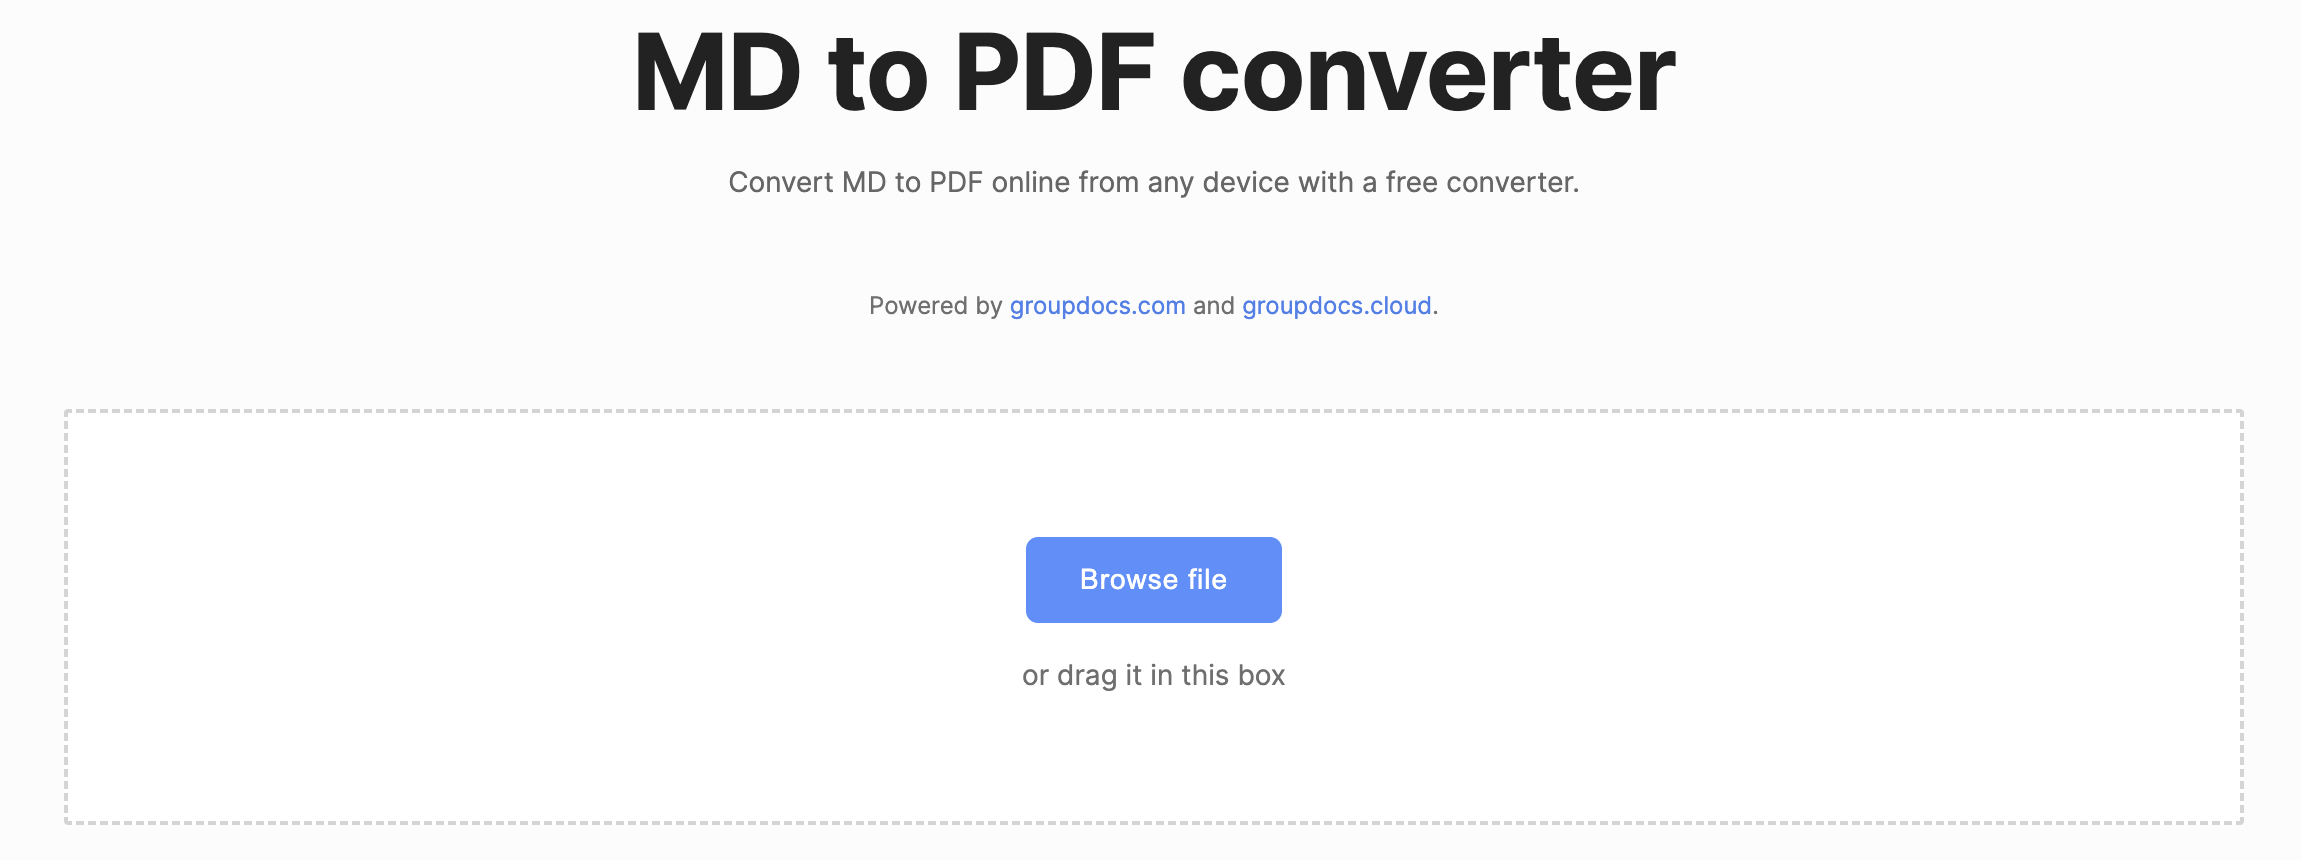 çevrimiçi MD'den PDF'ye dönüştürücü